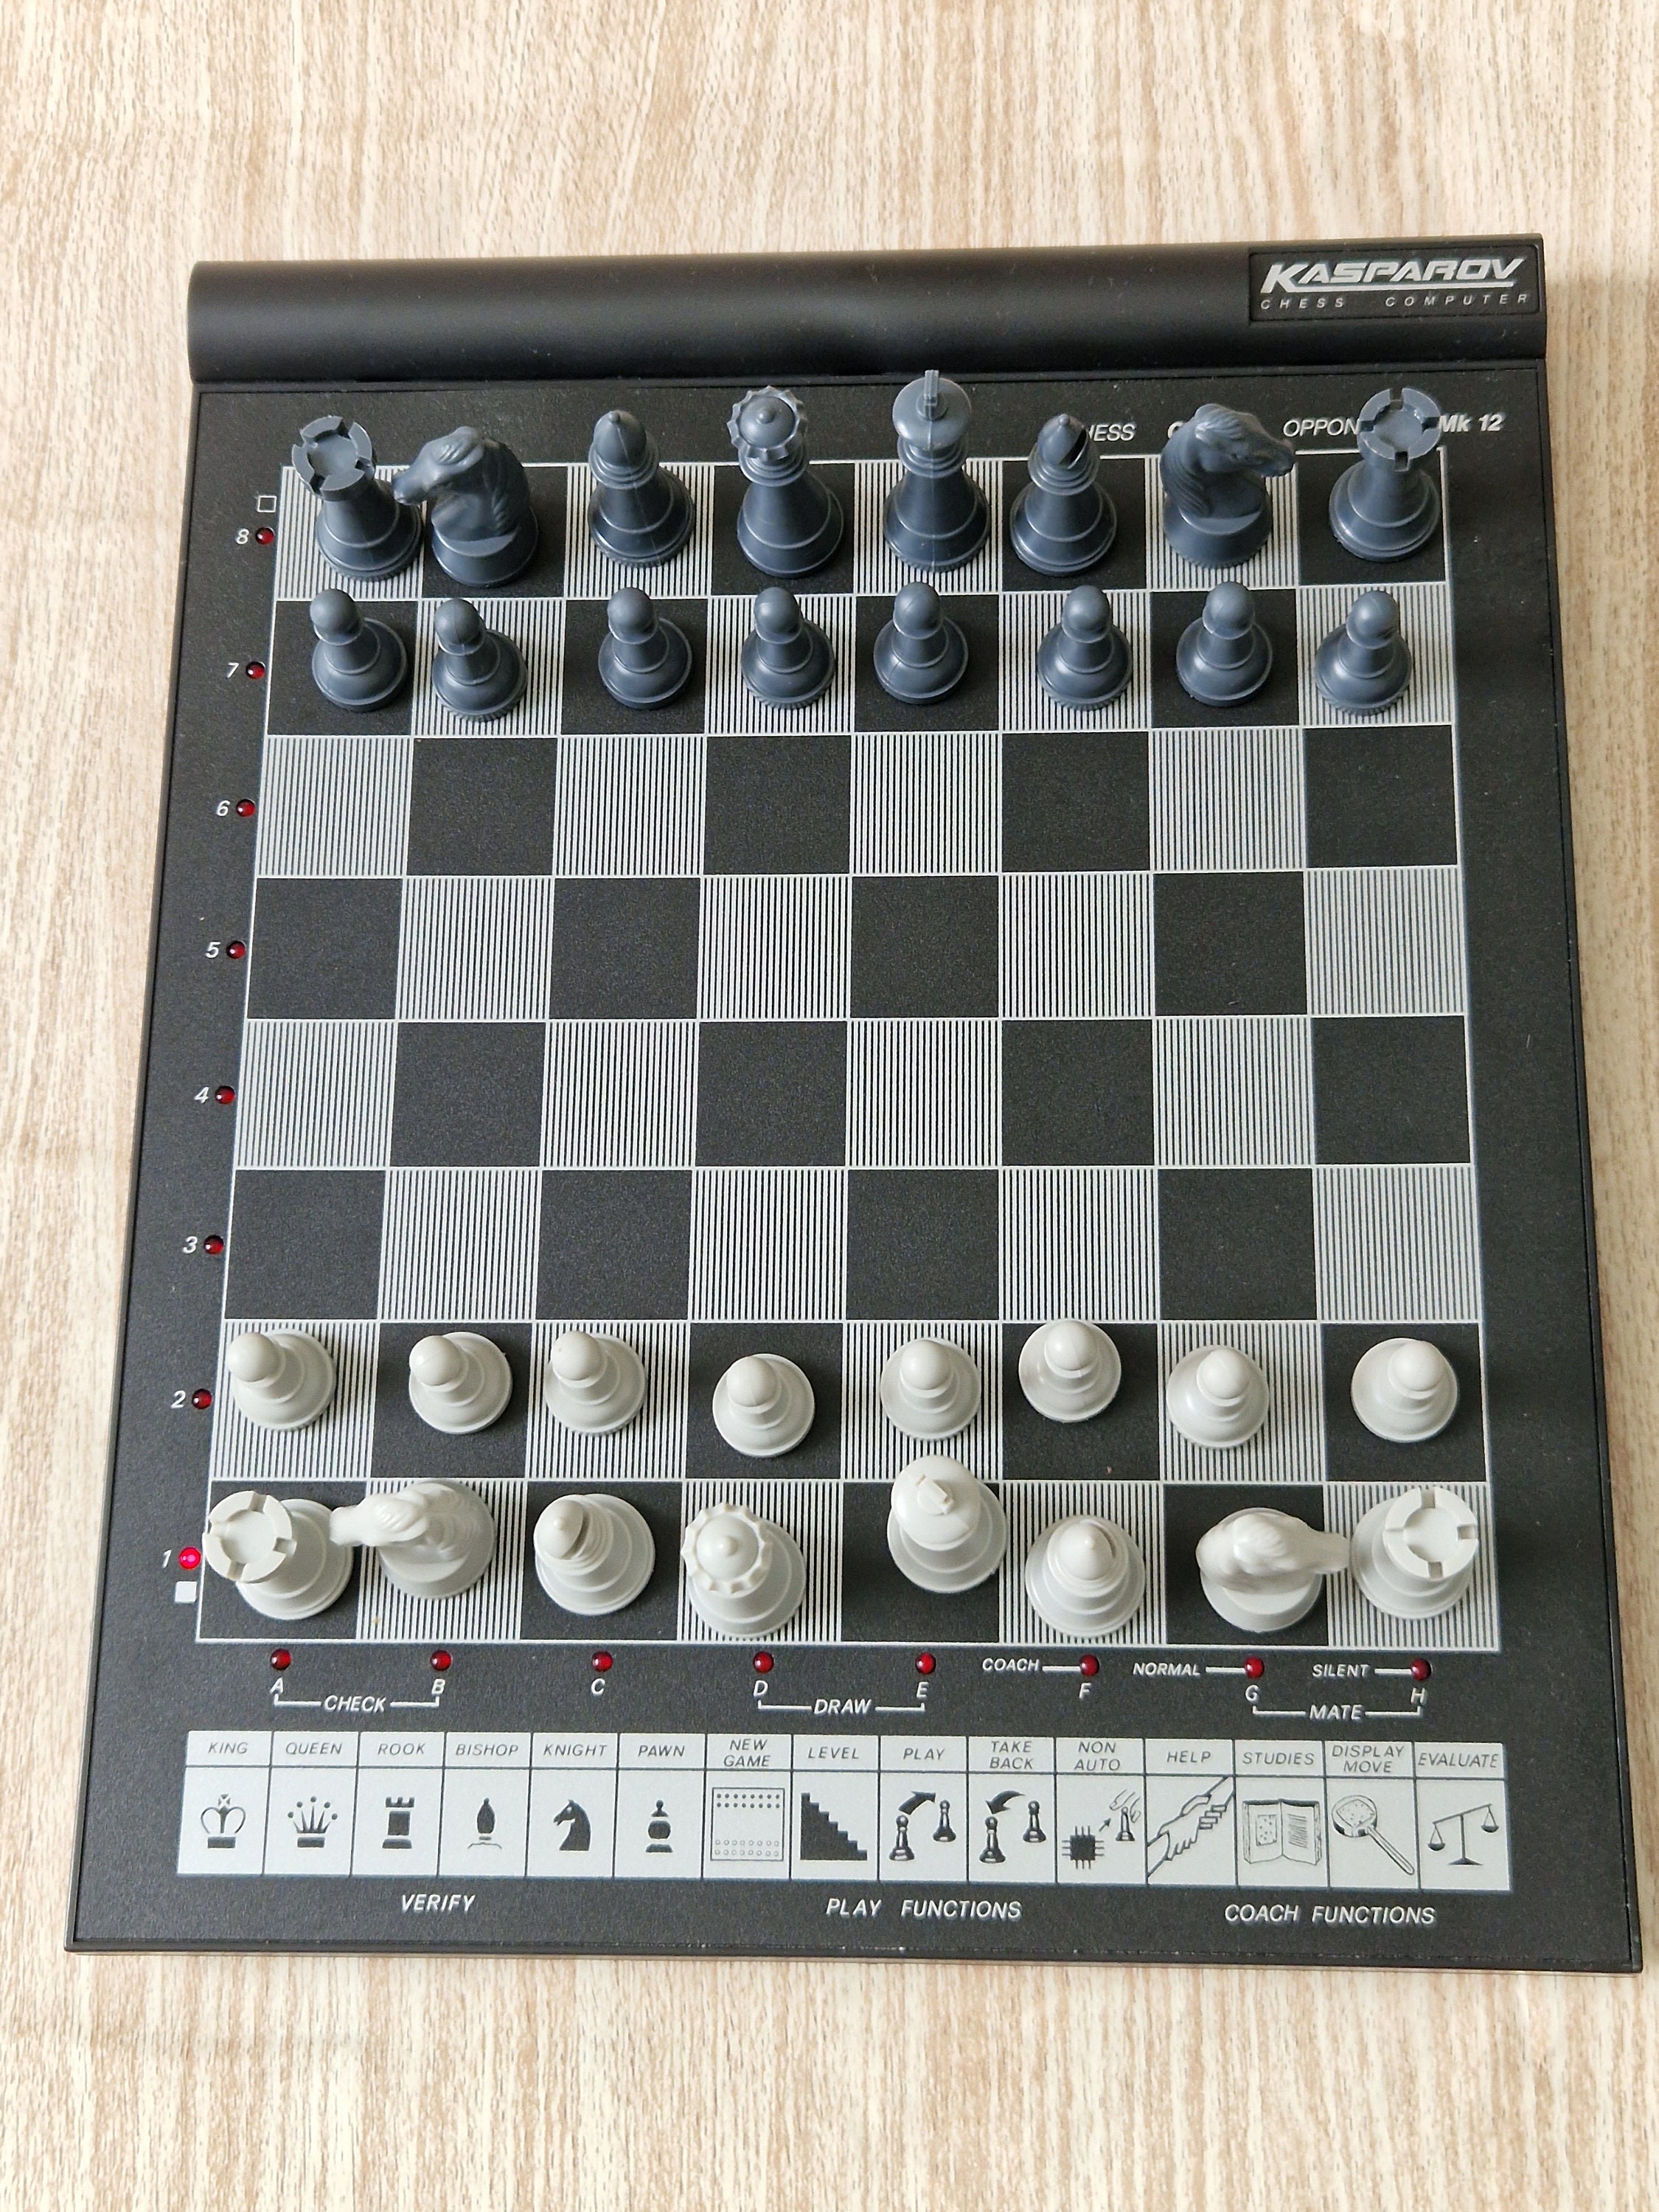 KASPAROV Elektronisches Schach Set Computer MK12 Boxed von